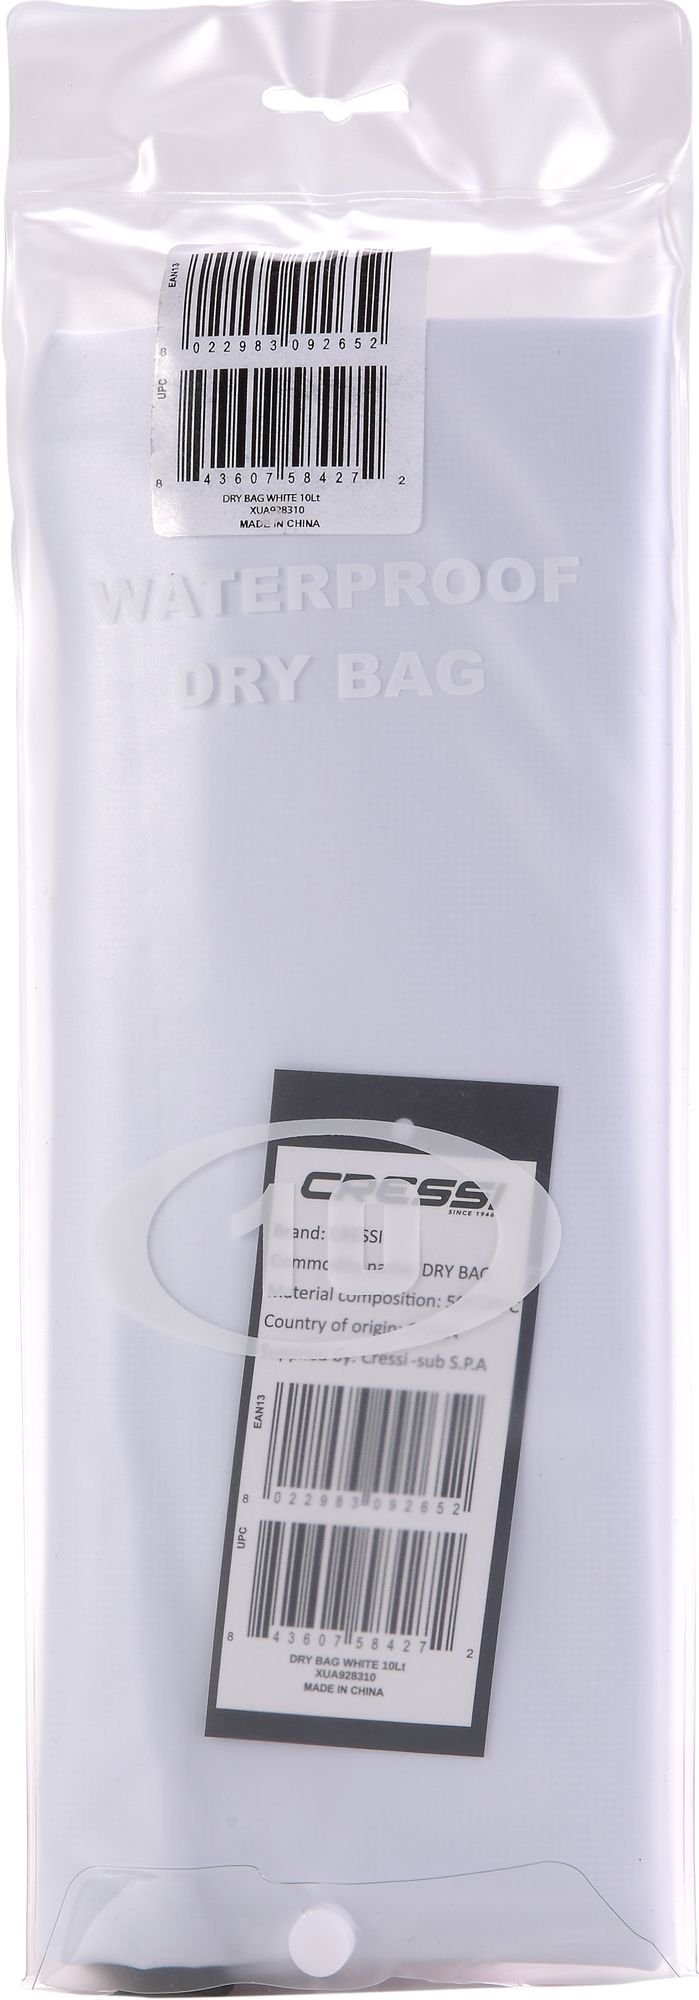 Dry Bag - Cressi